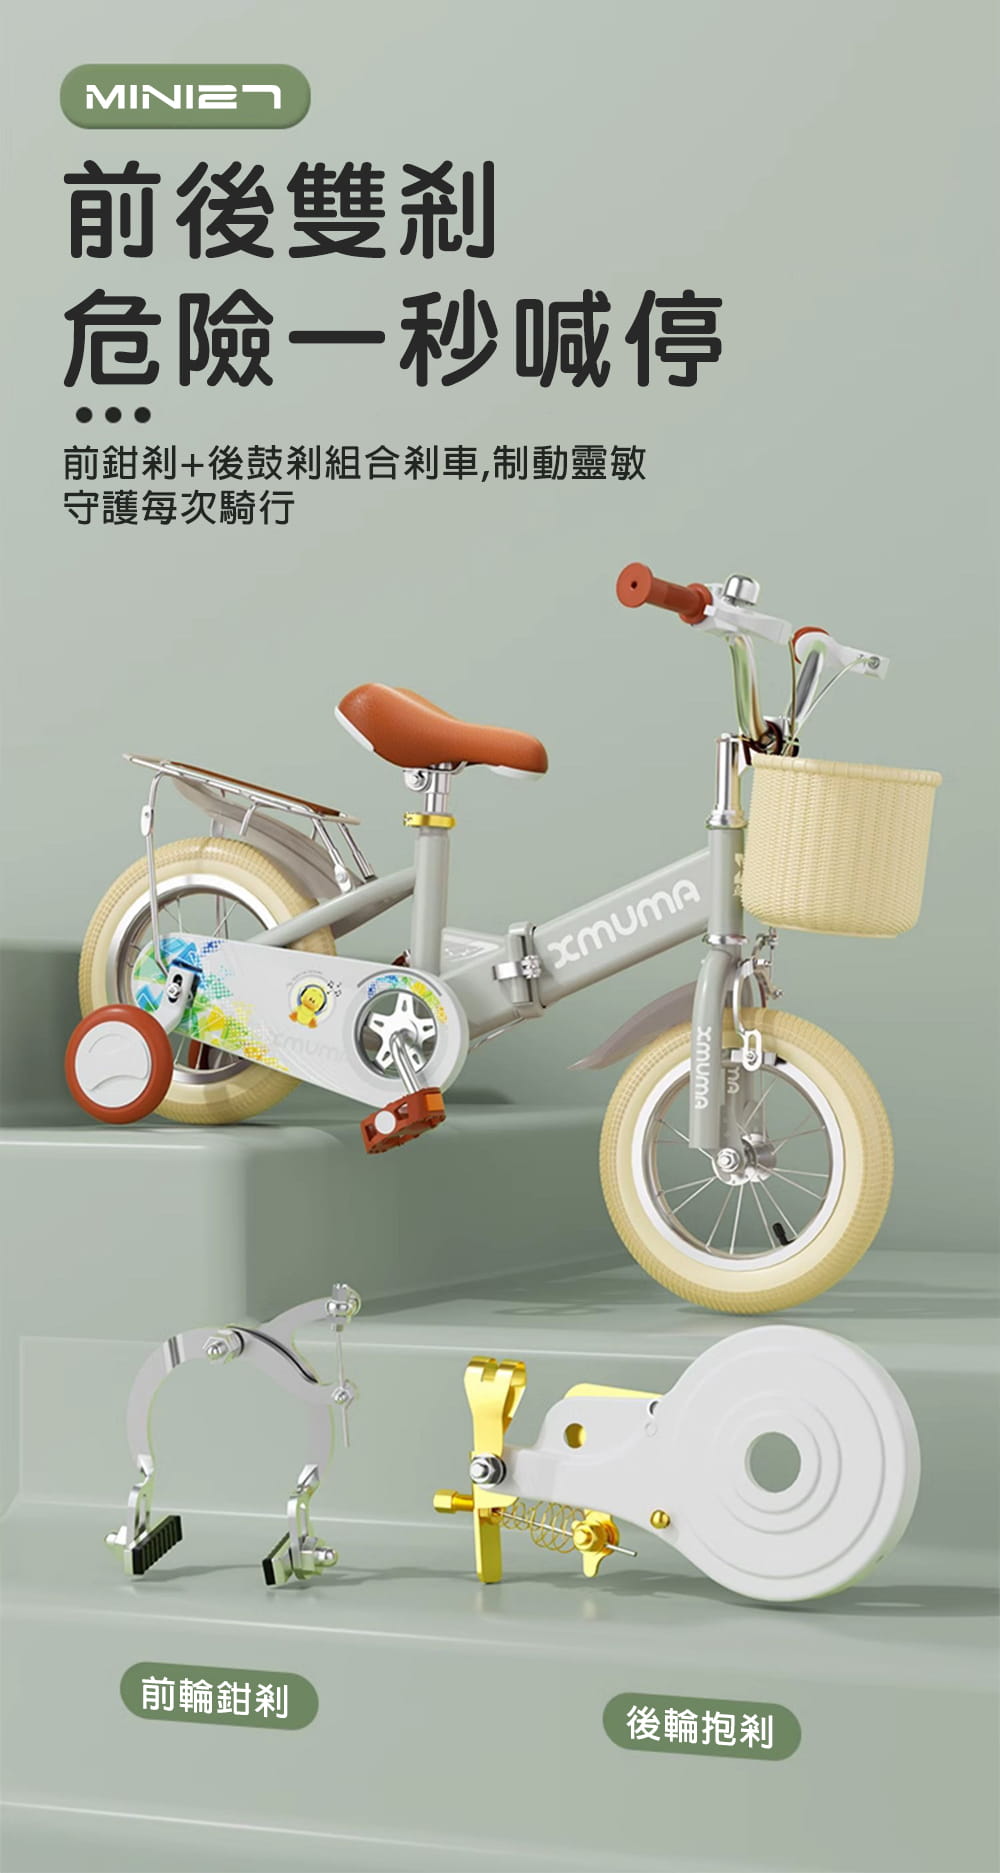 BIKEONE MINI27 兒童折疊自行車14吋男女寶寶小孩摺疊腳踏單車後貨架版款顏色可愛清新 9